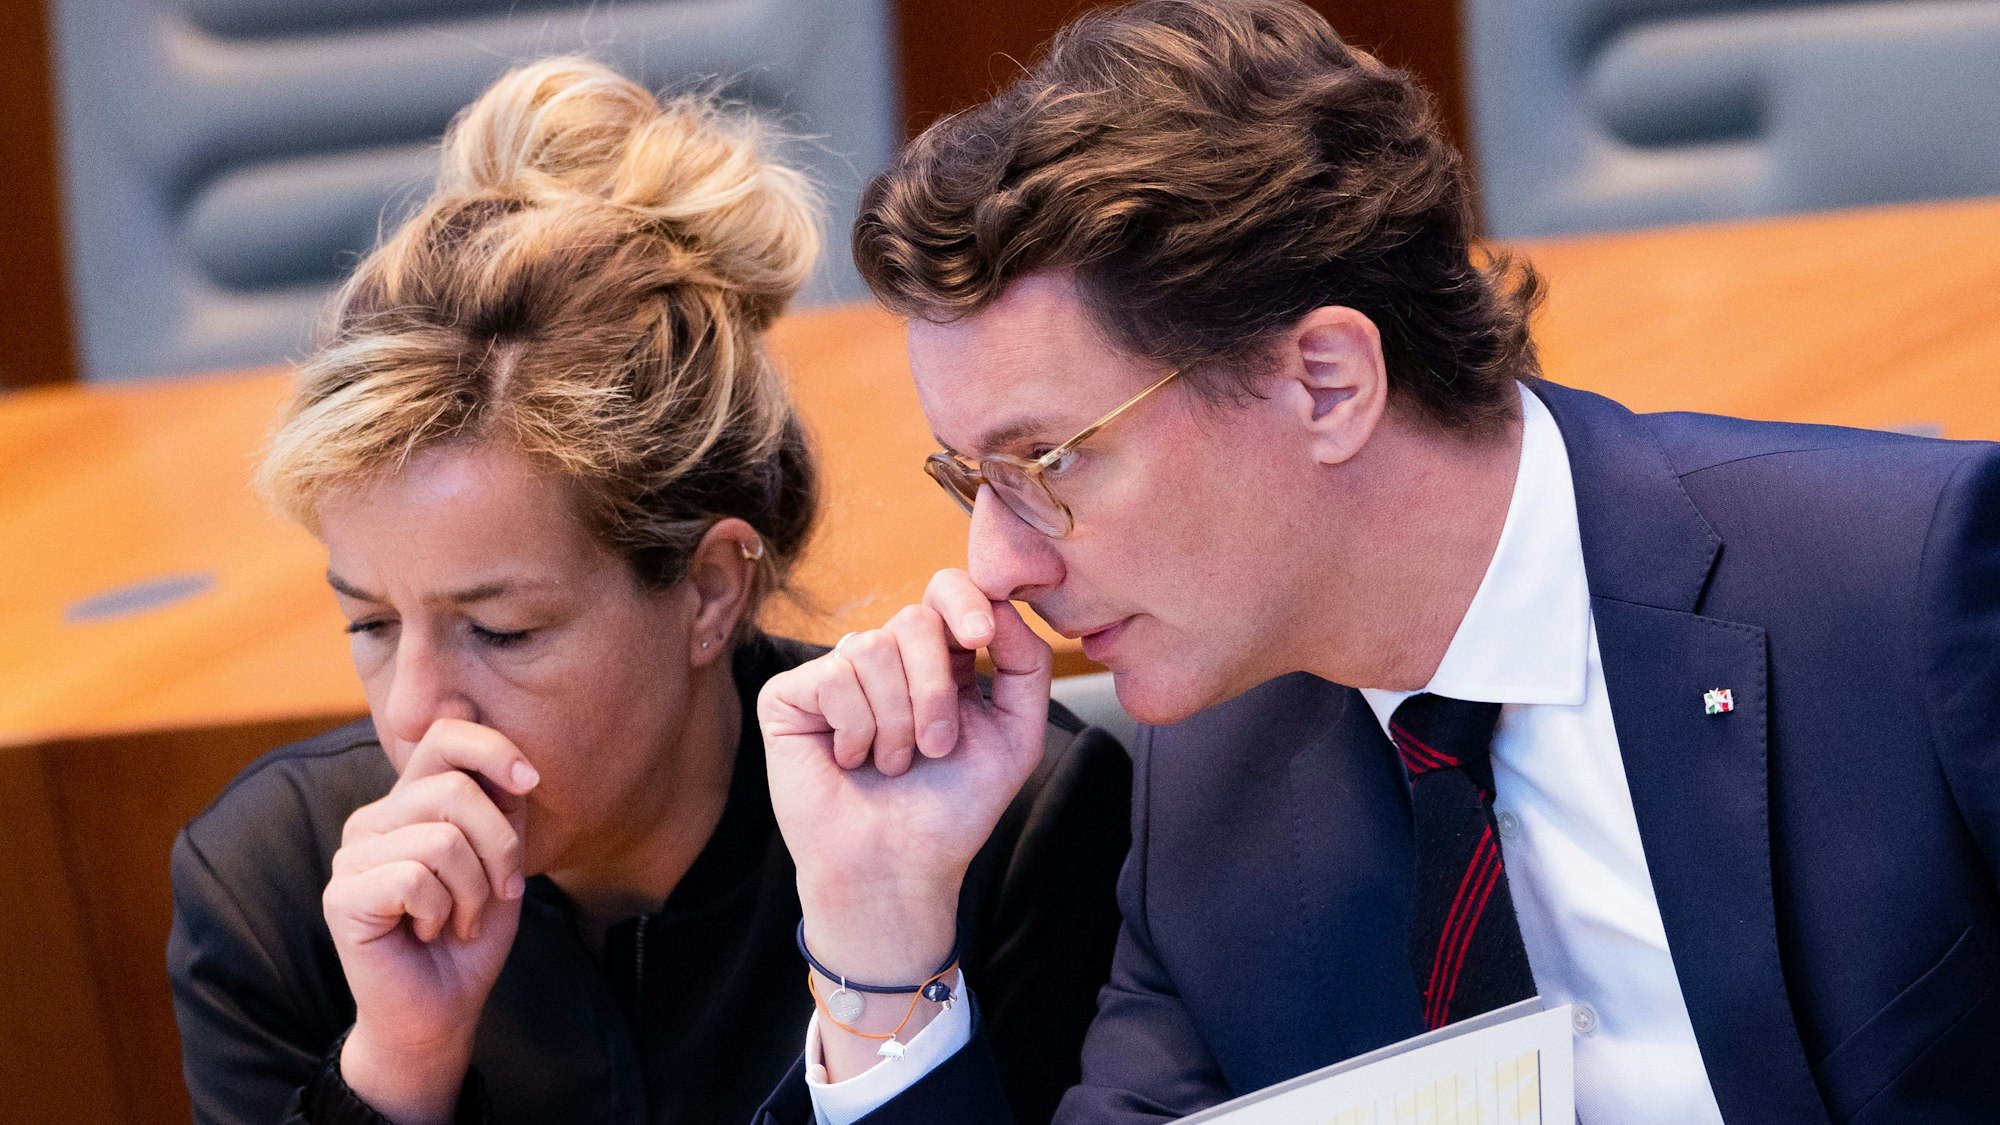 Die NRW-Politiker Mona Neubaur und Hendrik Wüst sitzen im Landtag, sie gucken besorgt, beide halten sich die Hände vor das Gesicht.